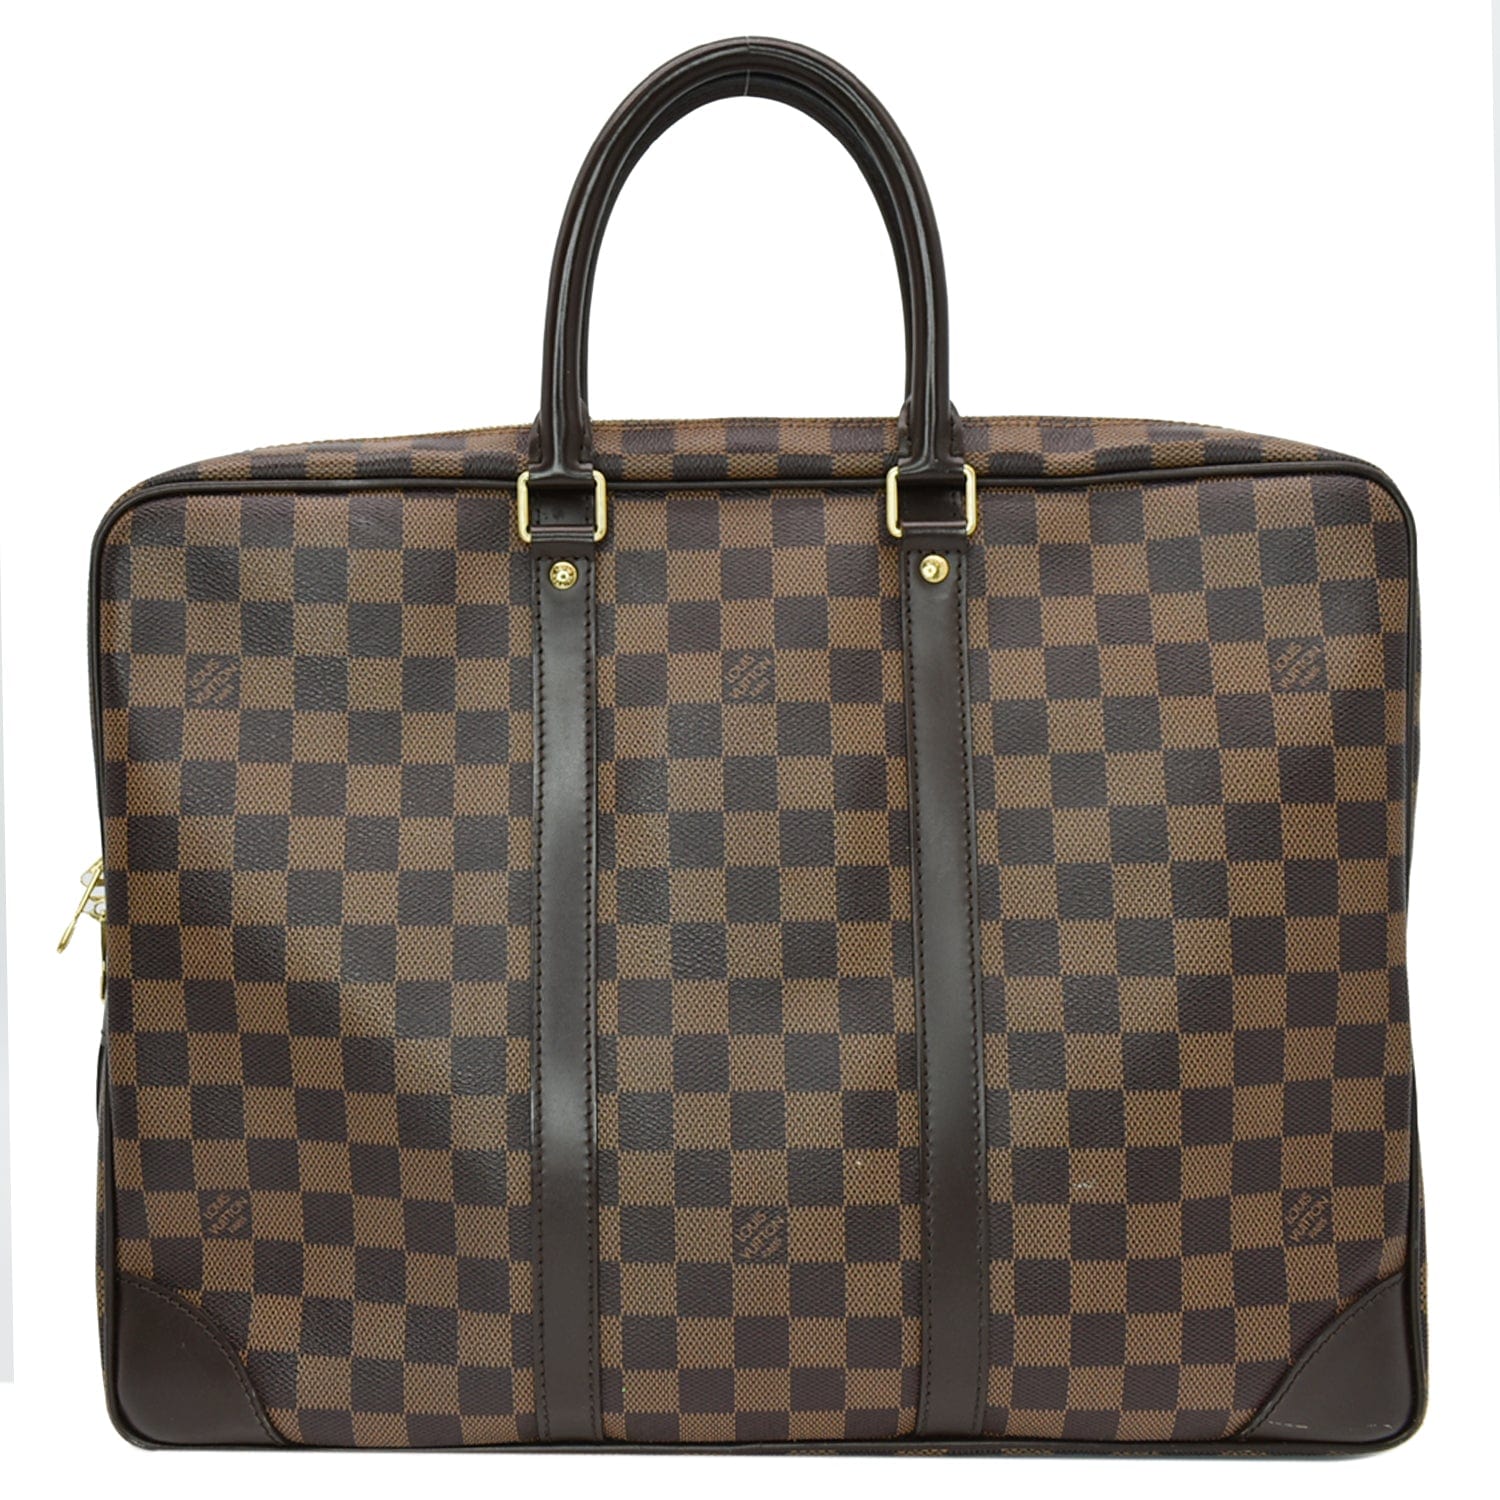 Louis Vuitton Cover Voyage N41397 DU0125 Tote Bag Shoulder Business Me